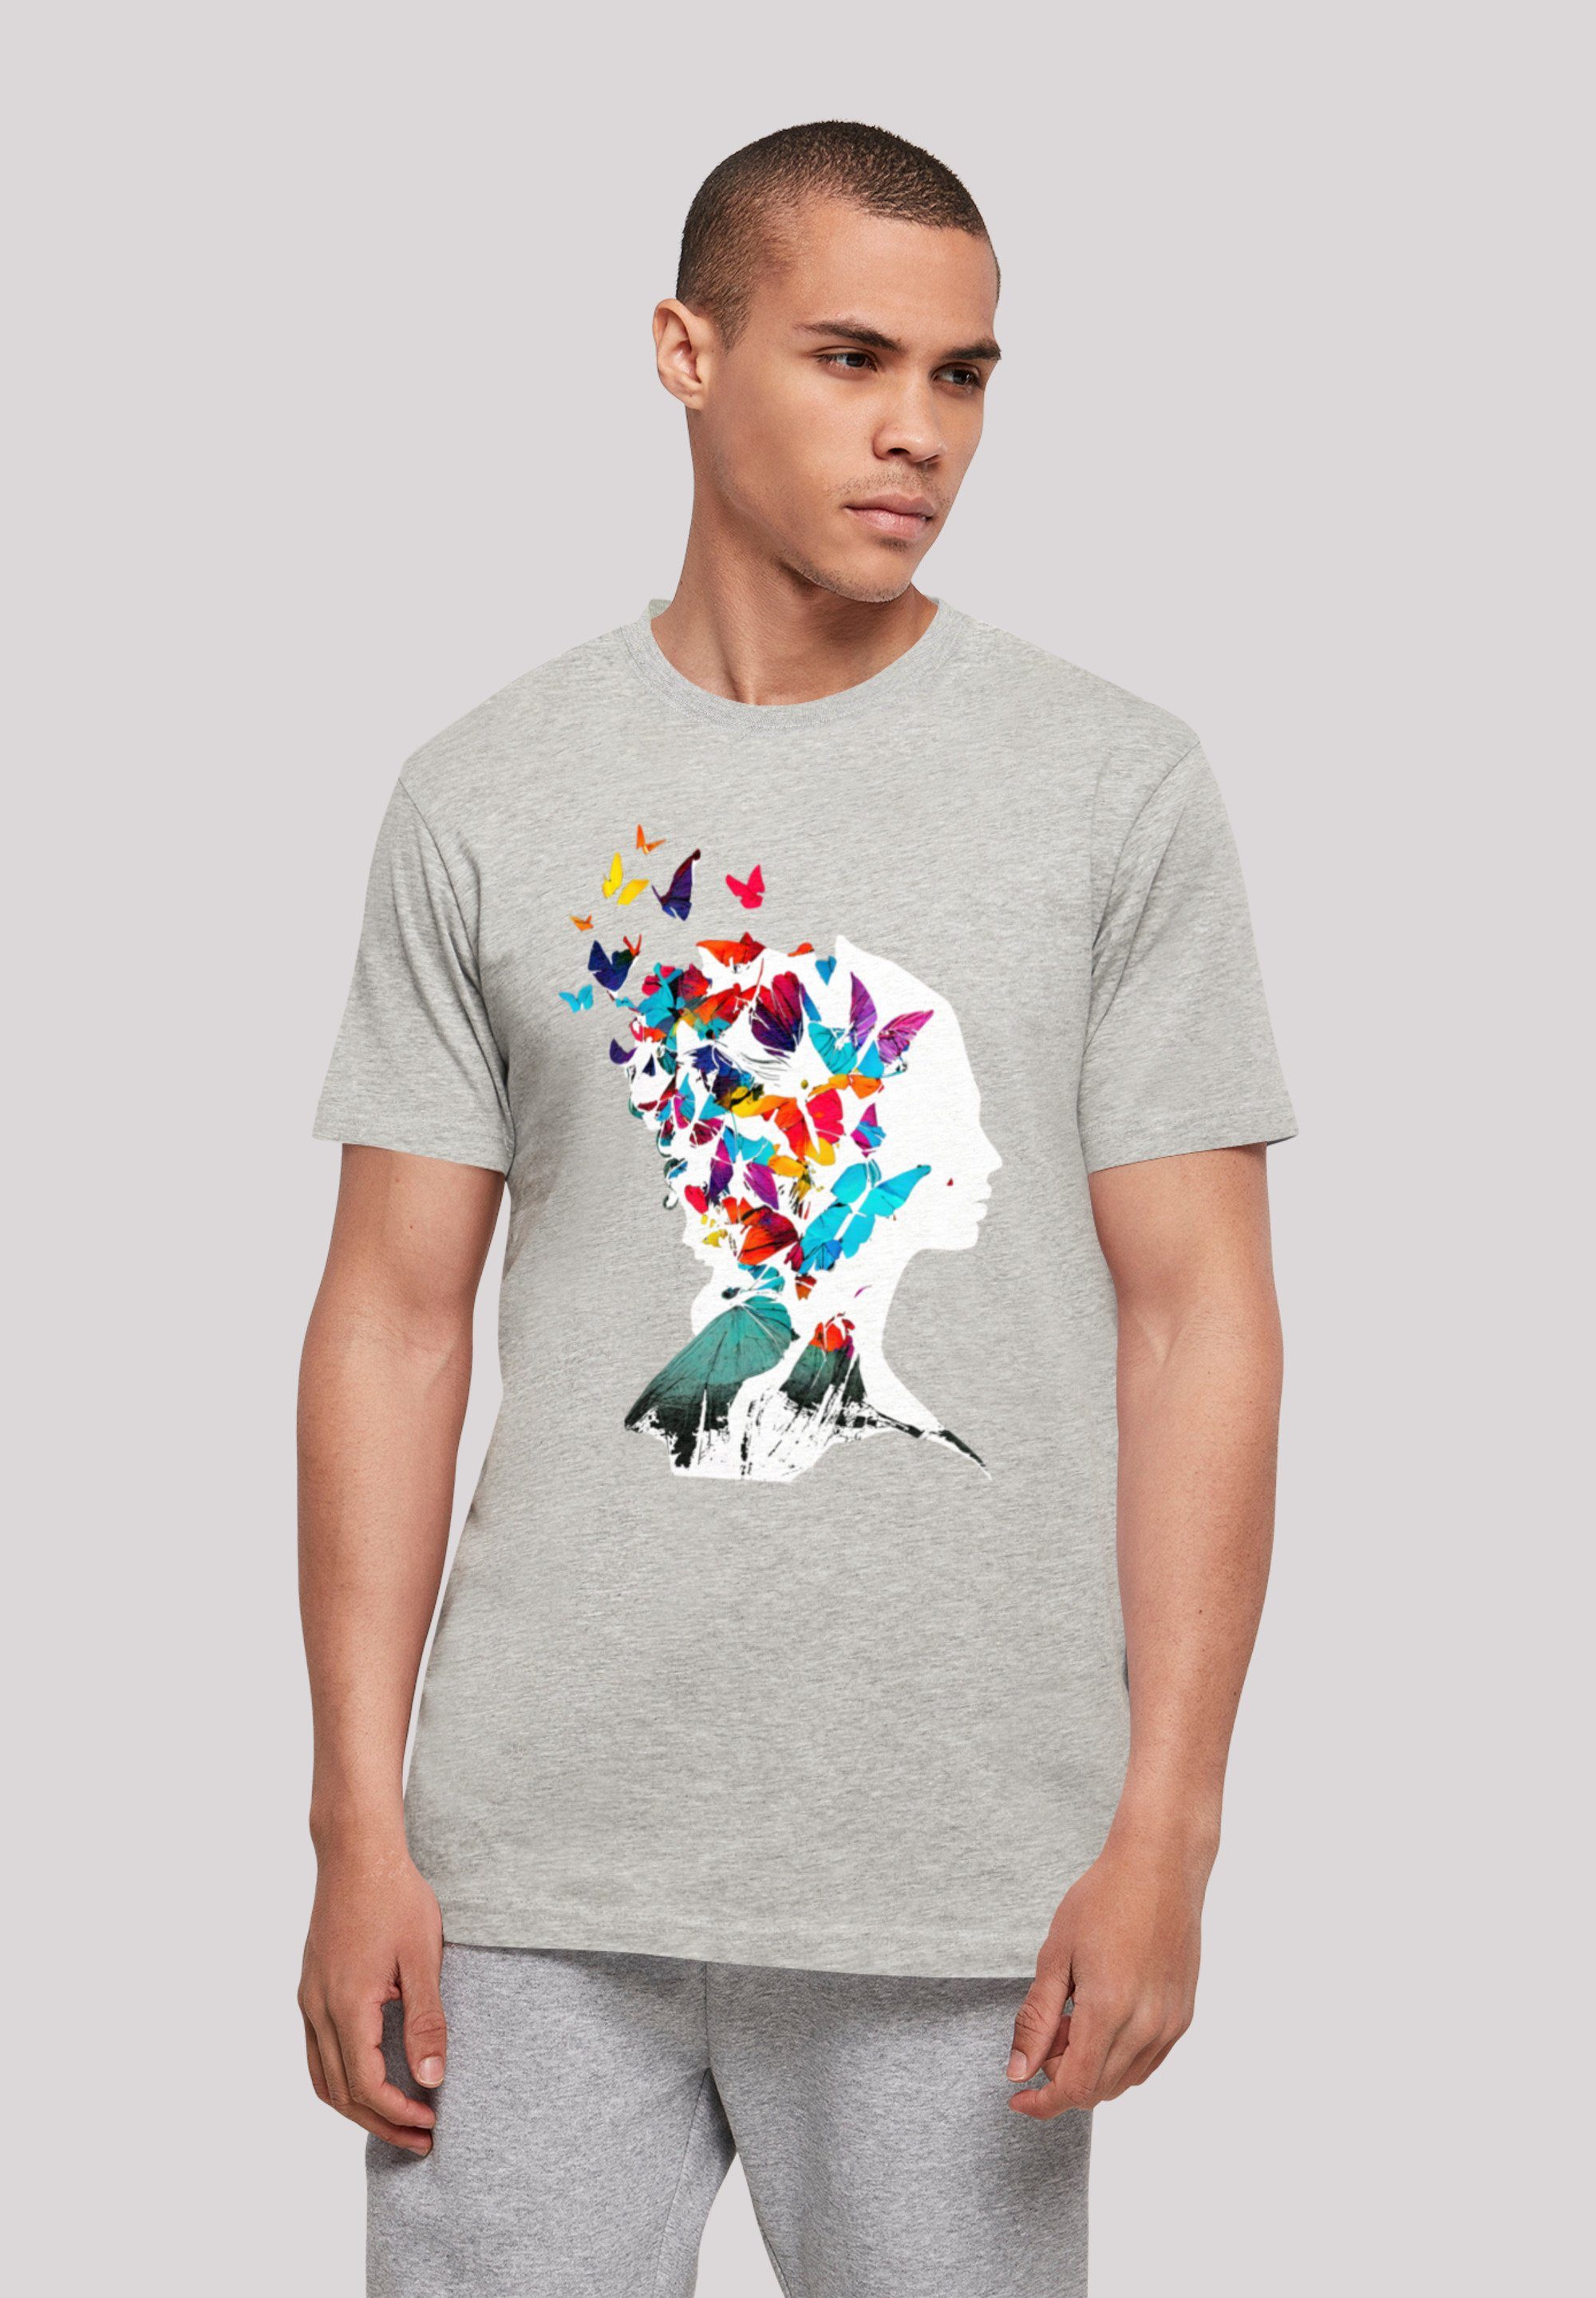 Silhouette hohem weicher UNISEX Sehr TEE Baumwollstoff F4NT4STIC T-Shirt Print, Schmetterling Tragekomfort mit